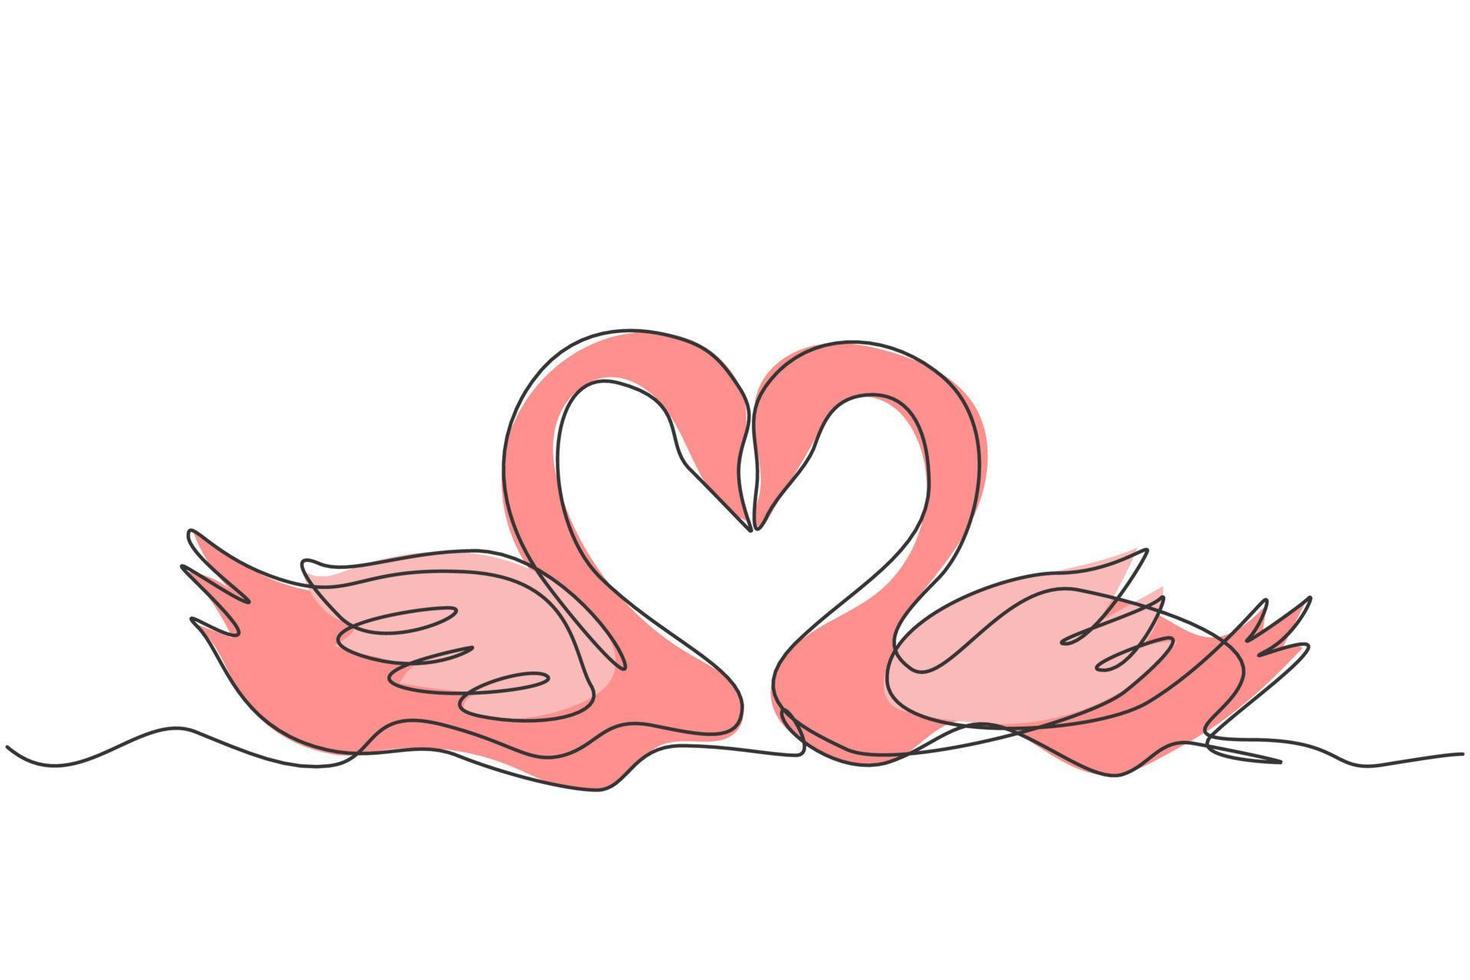 um desenho de linha contínua de um lindo casal de cisnes nadando no lago e suas cabeças formaram a romântica forma de coração. conceito de amor animal romântico linha única ilustração vetorial design gráfico vetor